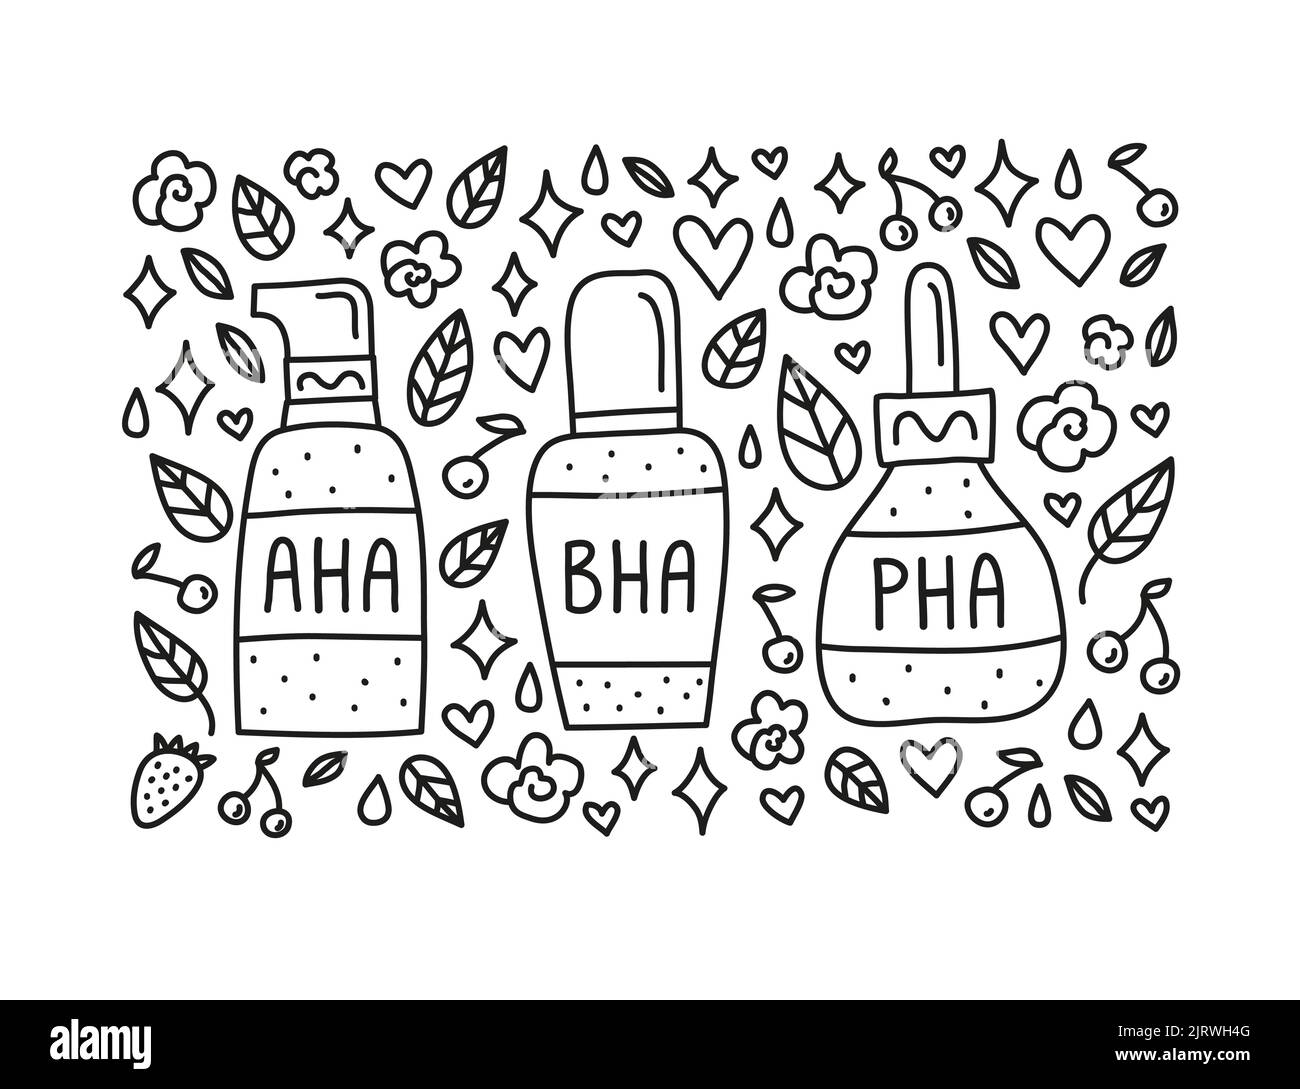 Doodle aha, bha, pha dans des bouteilles cosmétiques et des éléments décoratifs autour isolés sur fond blanc. Illustration de Vecteur